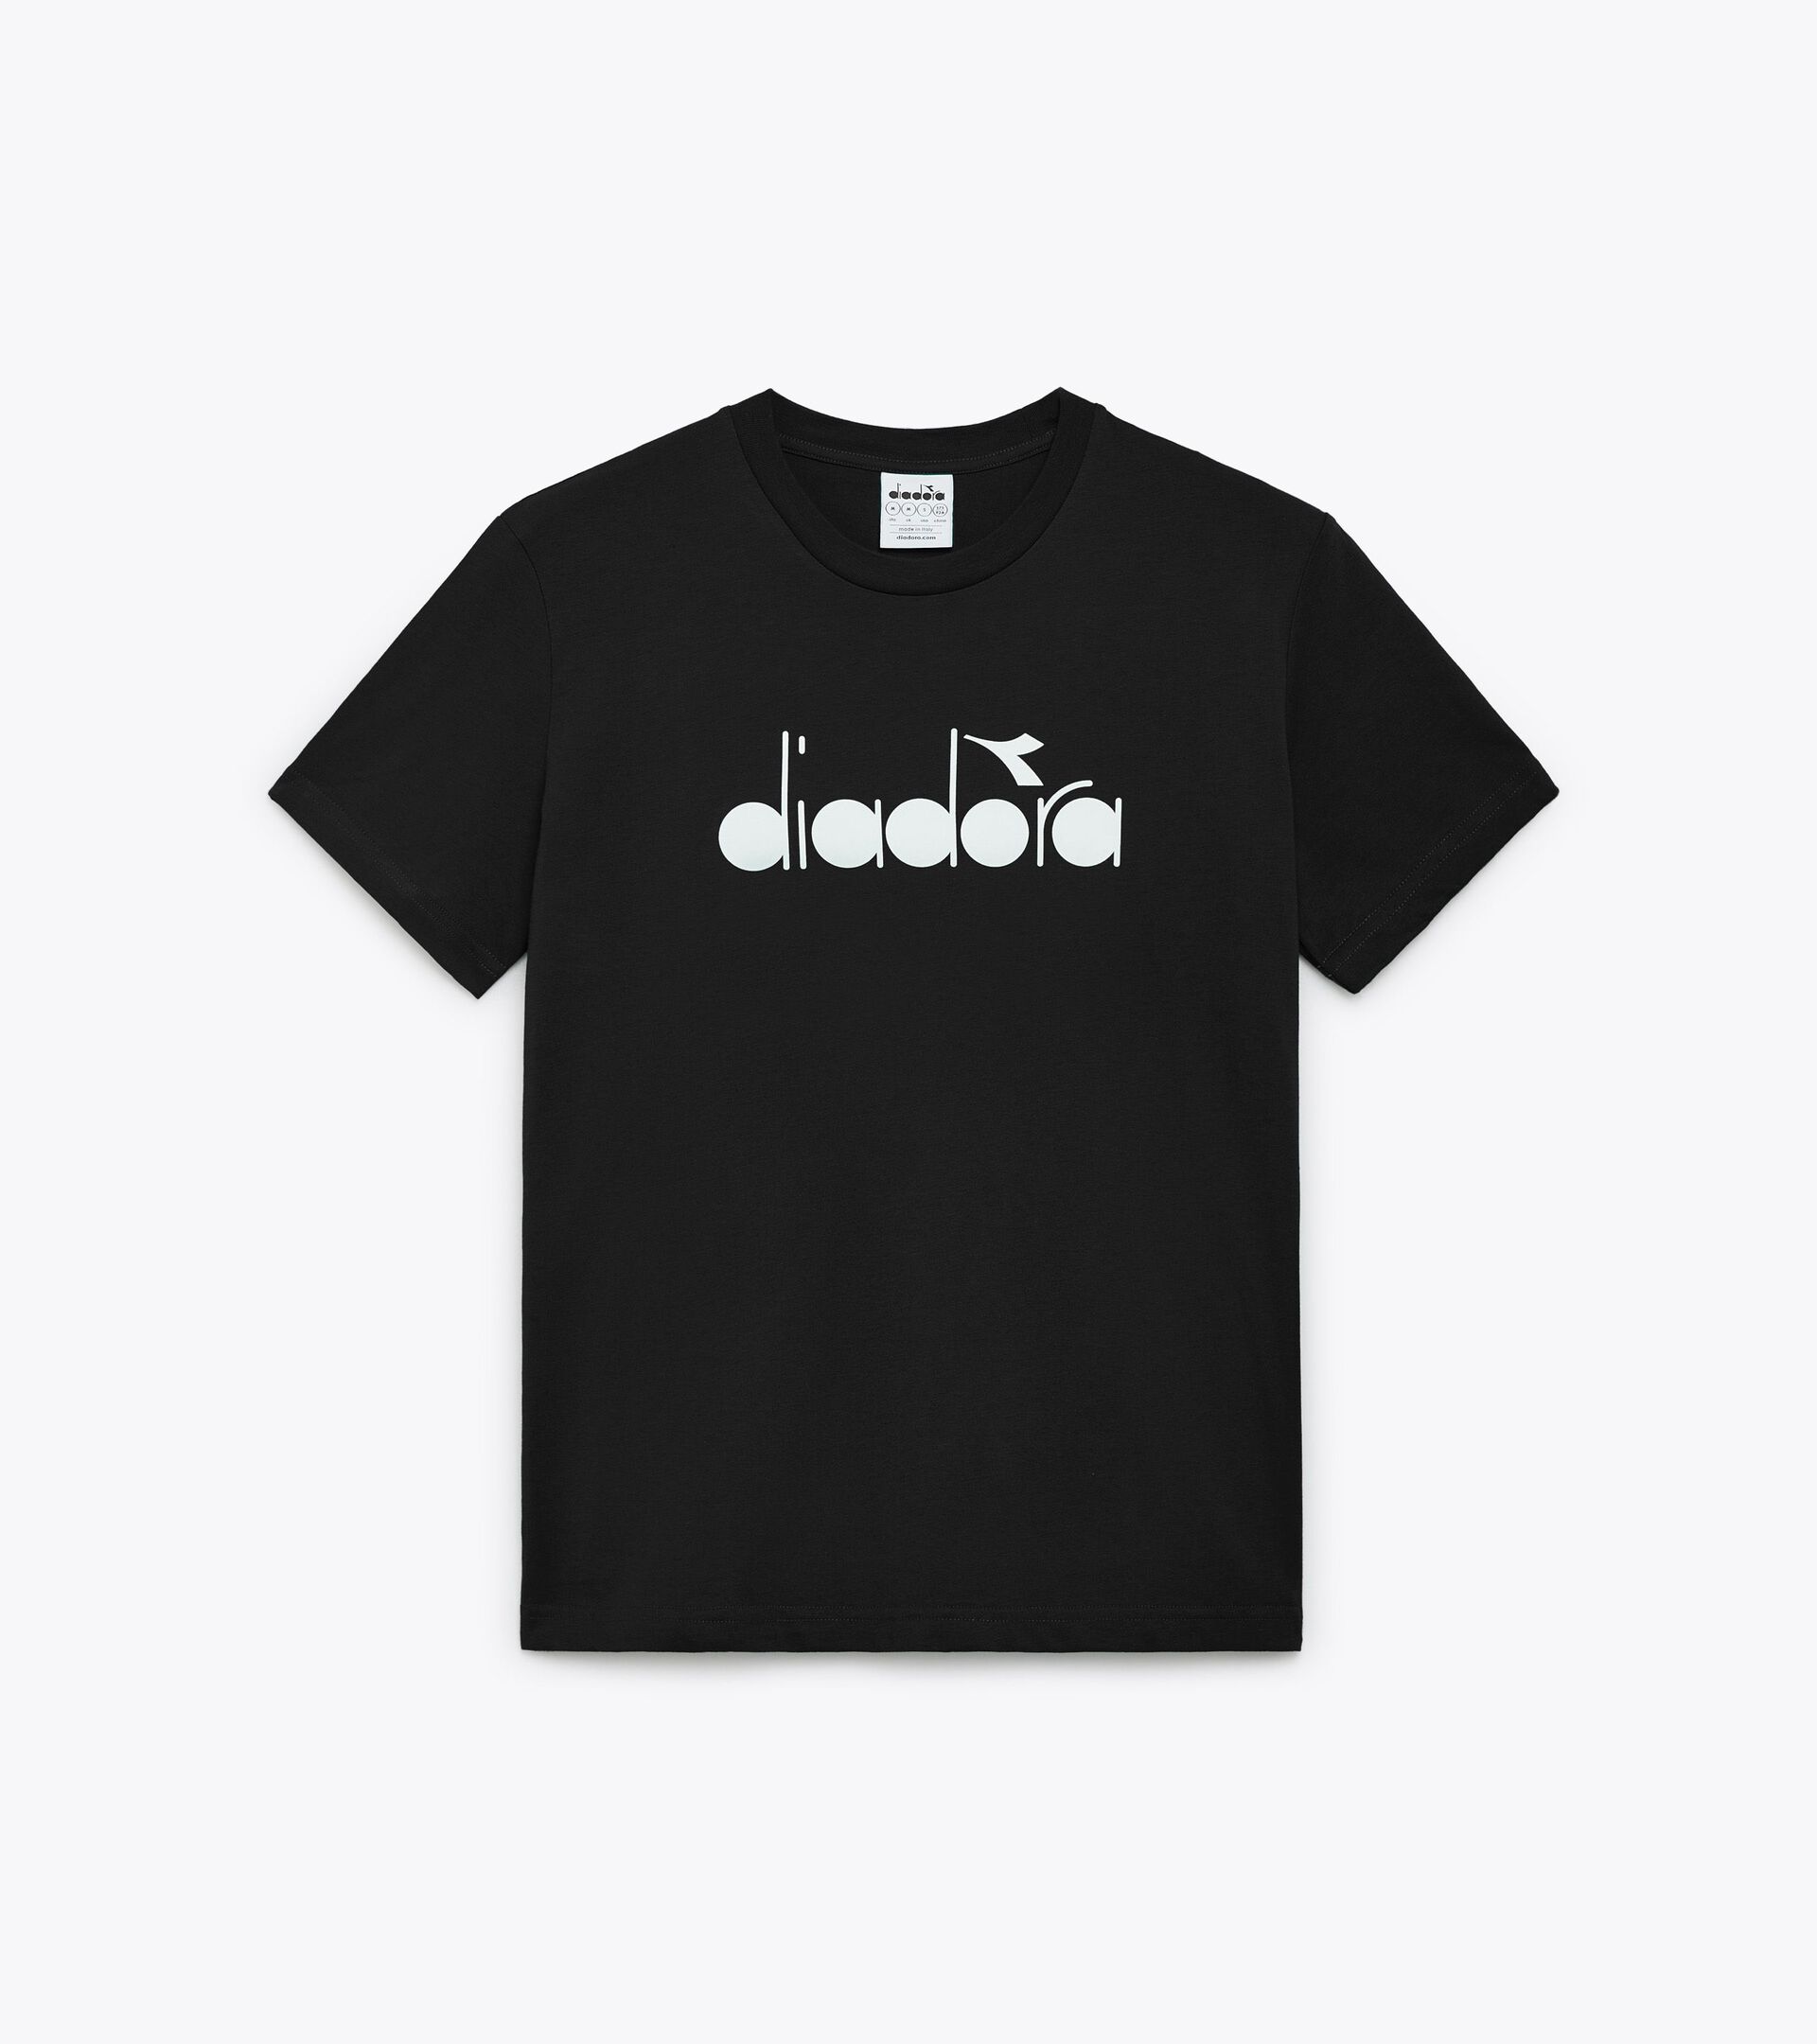 T-shirt - Made in Italy - Gender Neutral  T-SHIRT SS LOGO NOIR - Diadora